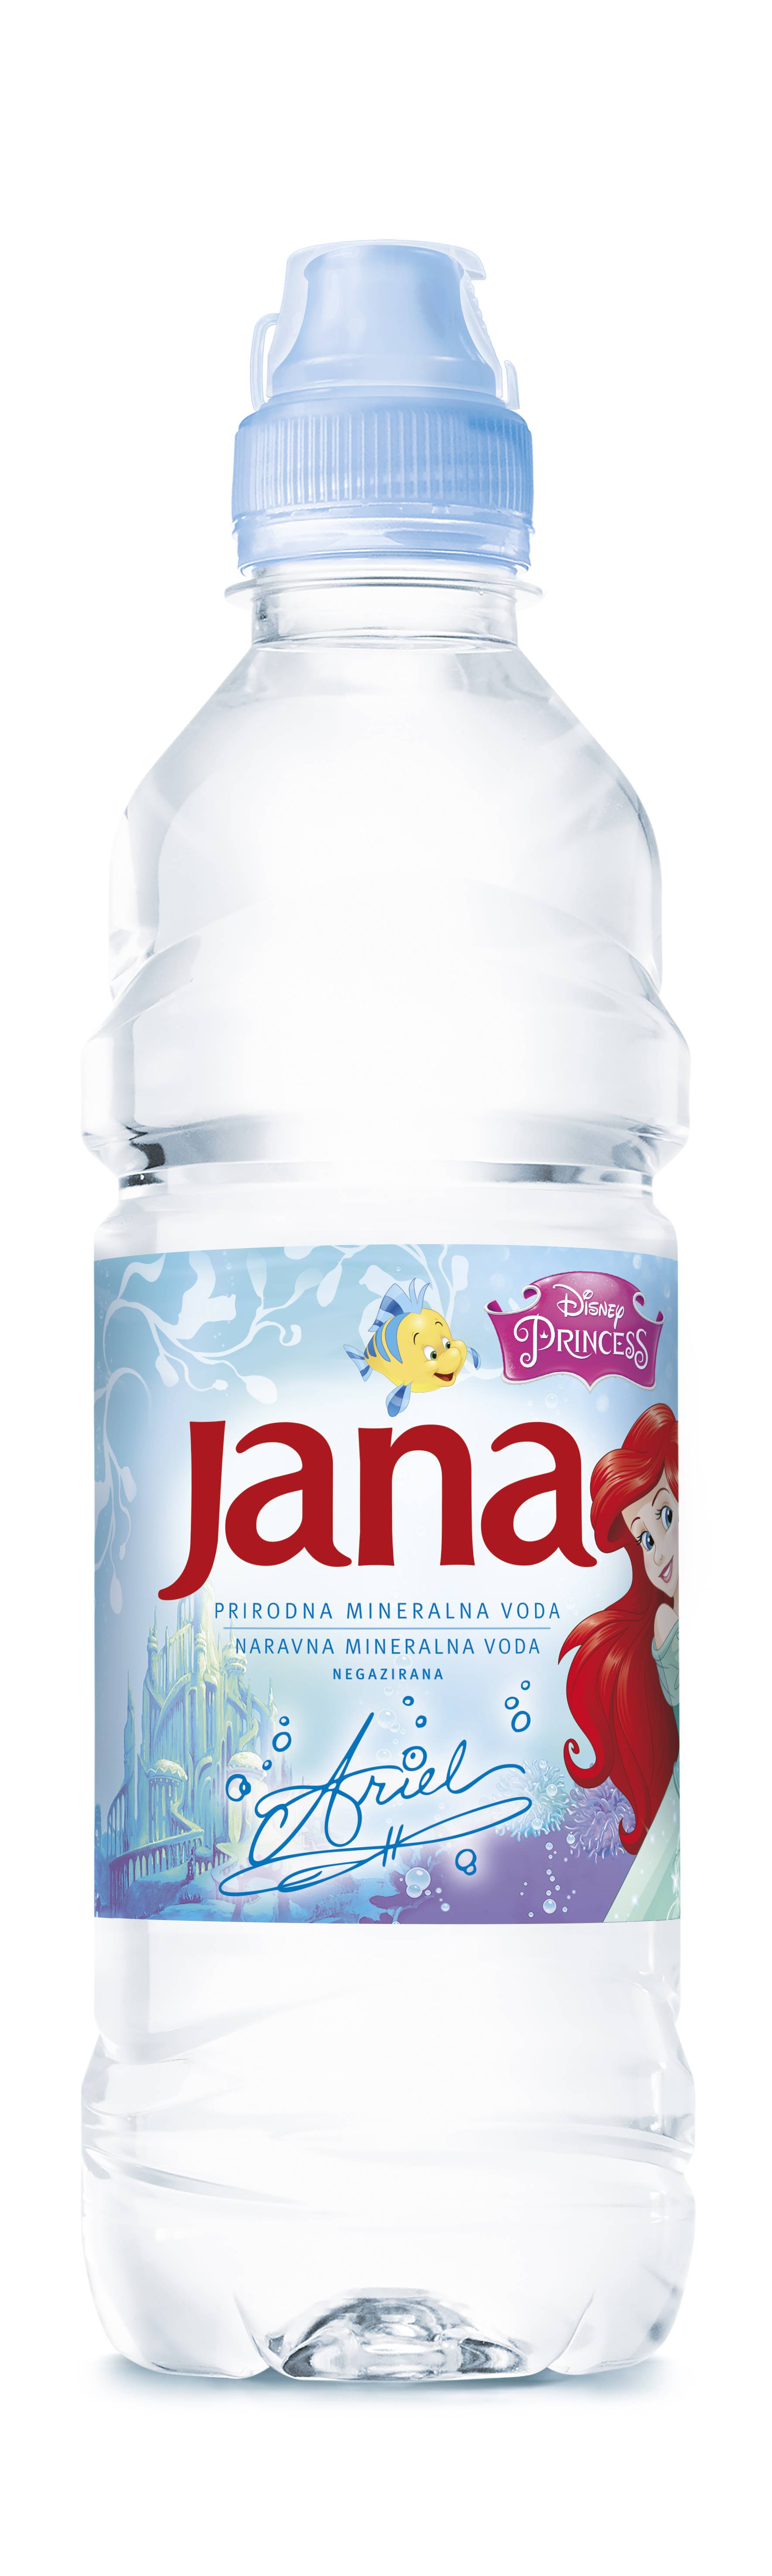 Jana Disney princeze - novo izdanje Jane